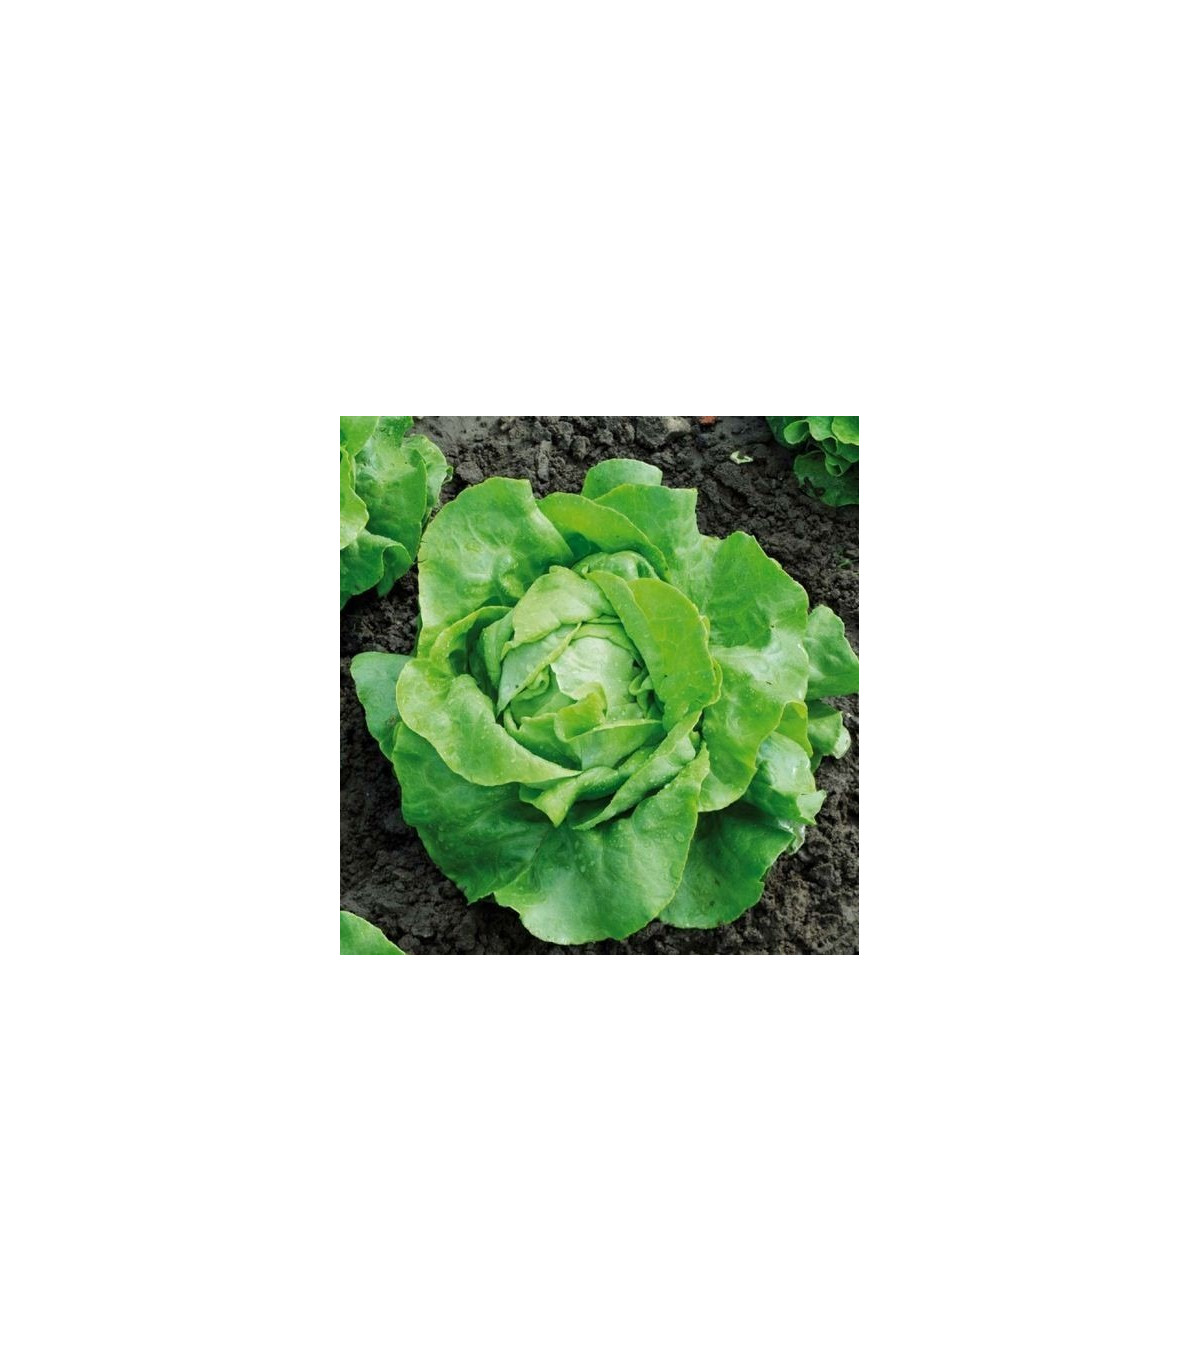 BIO Šalát hlávkový Nel - Lactuca sativa - bio semená šalátu - 0,1 g